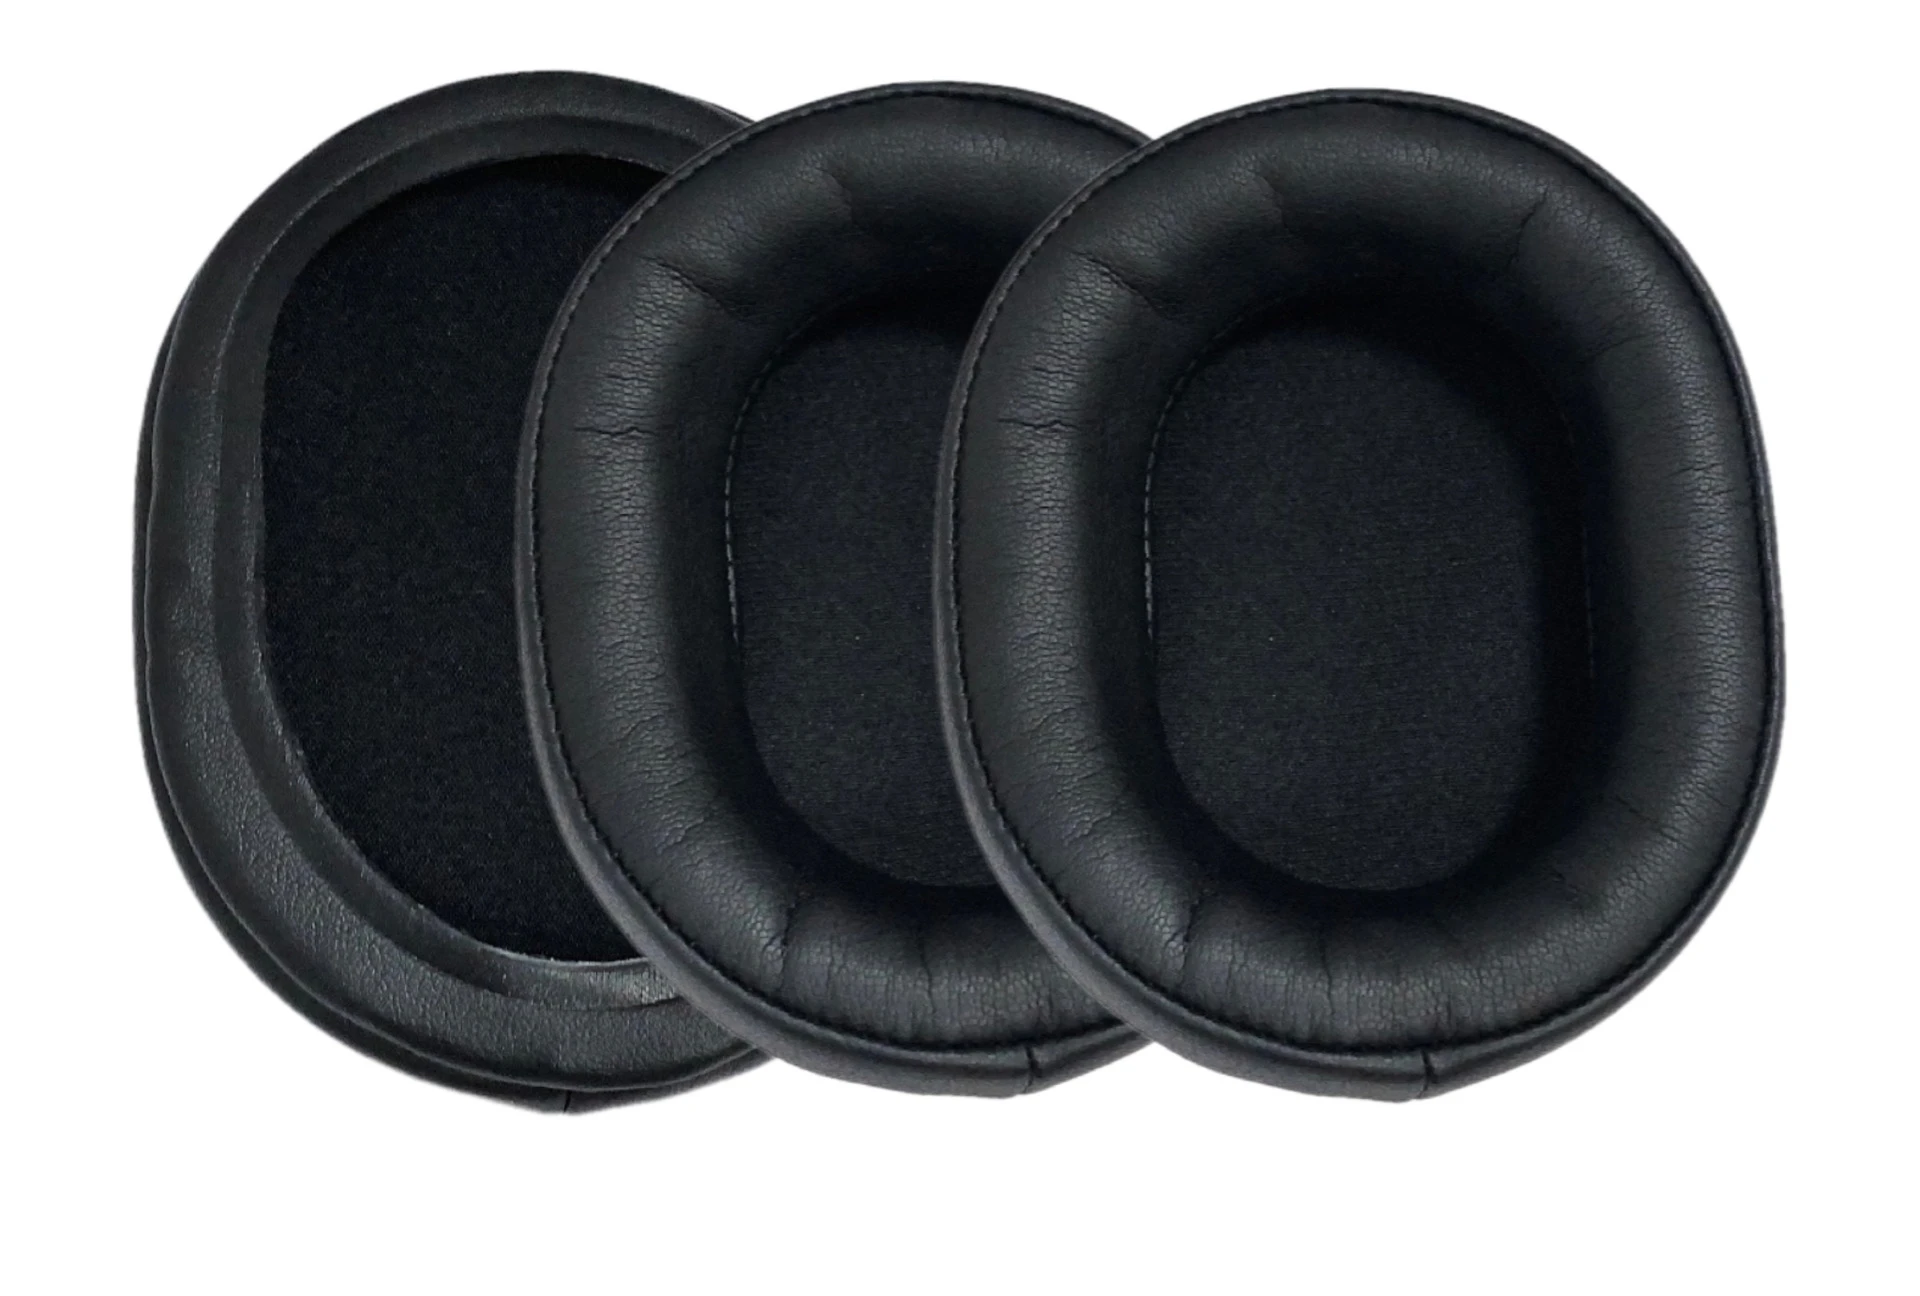 Substituição de Protecções para o Audio Technica ATH-WS1100 WS990 660 Fone de ouvido Fones de ouvido Couro Luva de Fone de ouvido Earmuff